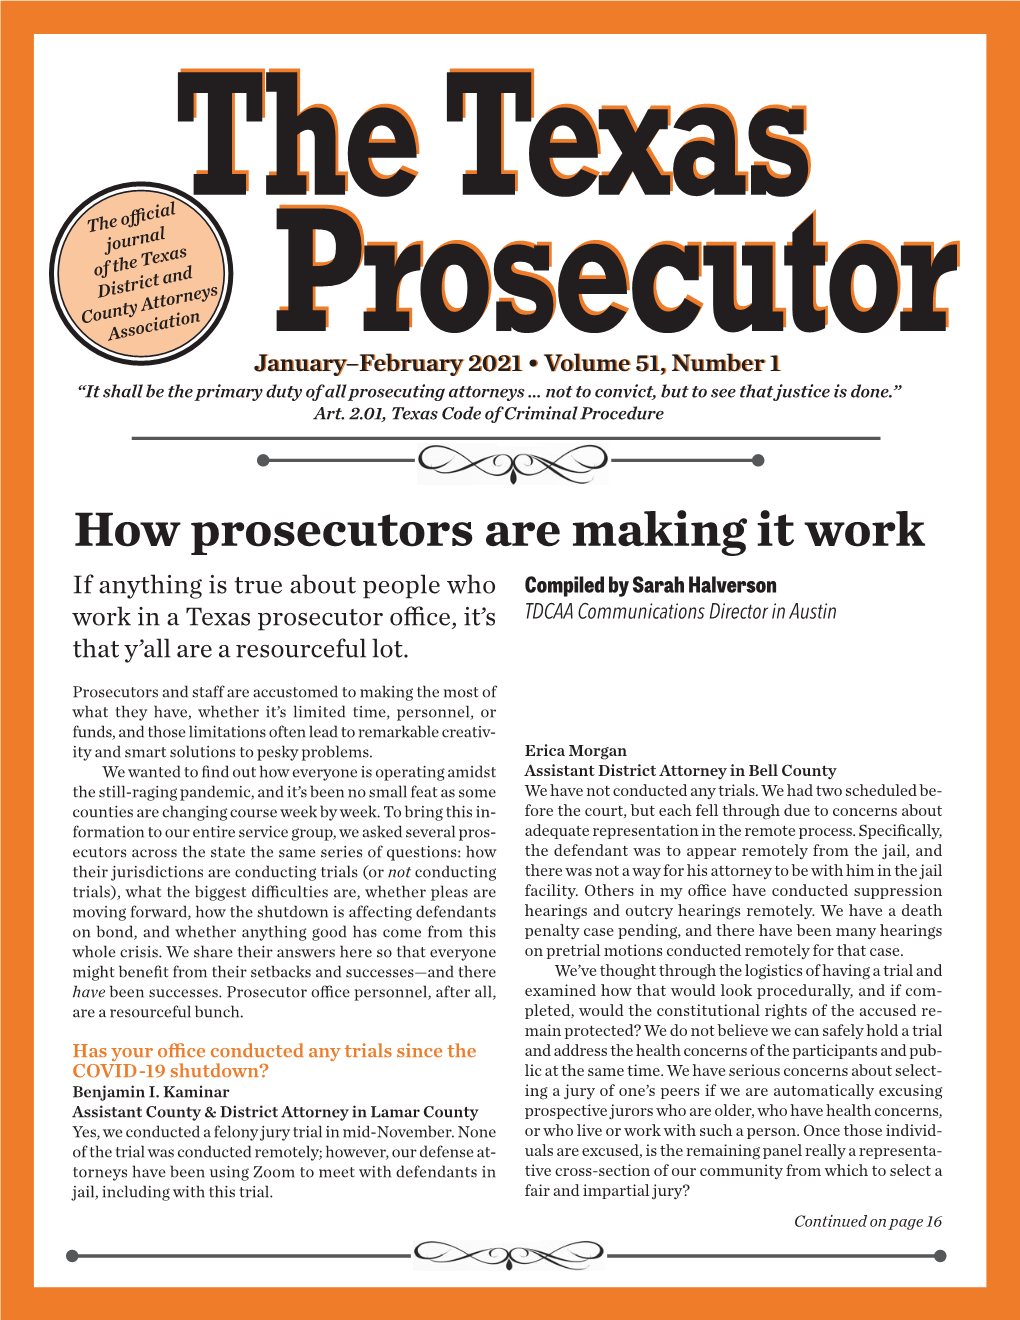 Texas Prosecutor 2017 Redesign